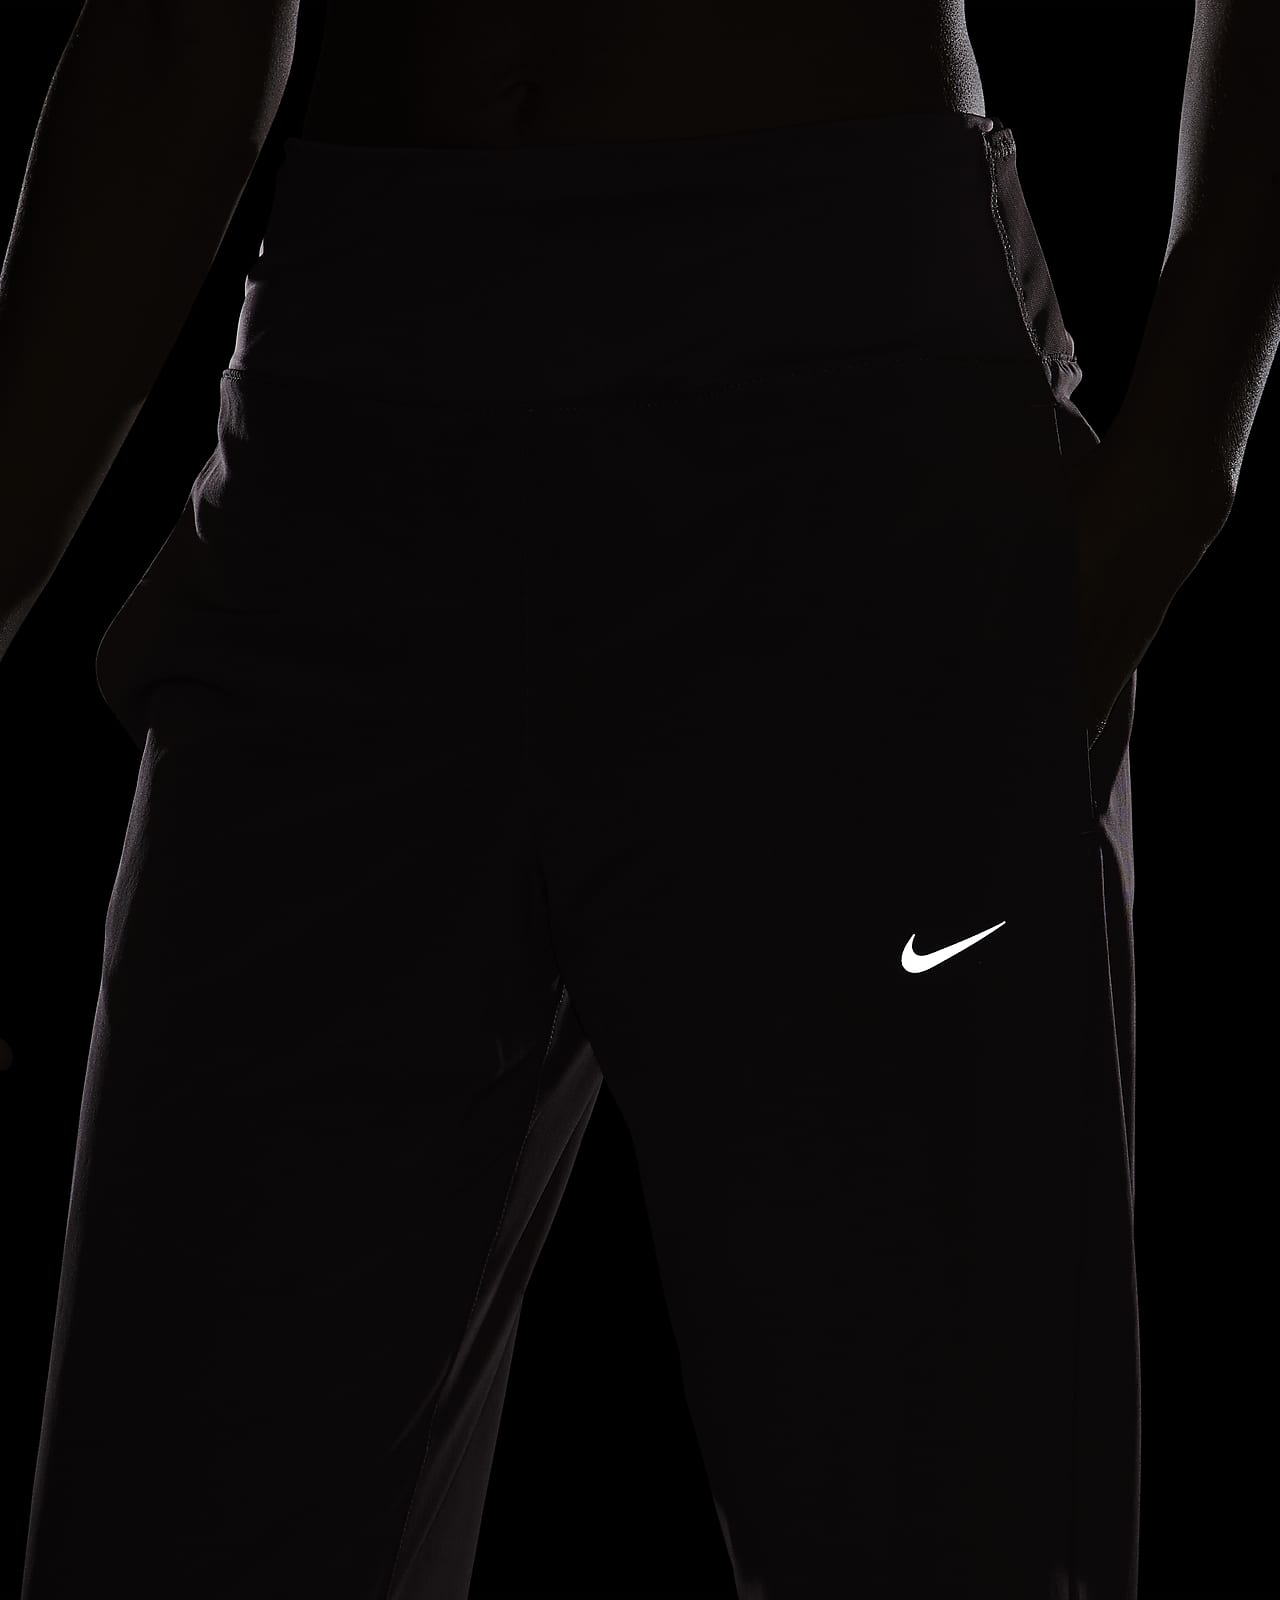 Nike Swift Men's Running Pants In White/black/black Reflective